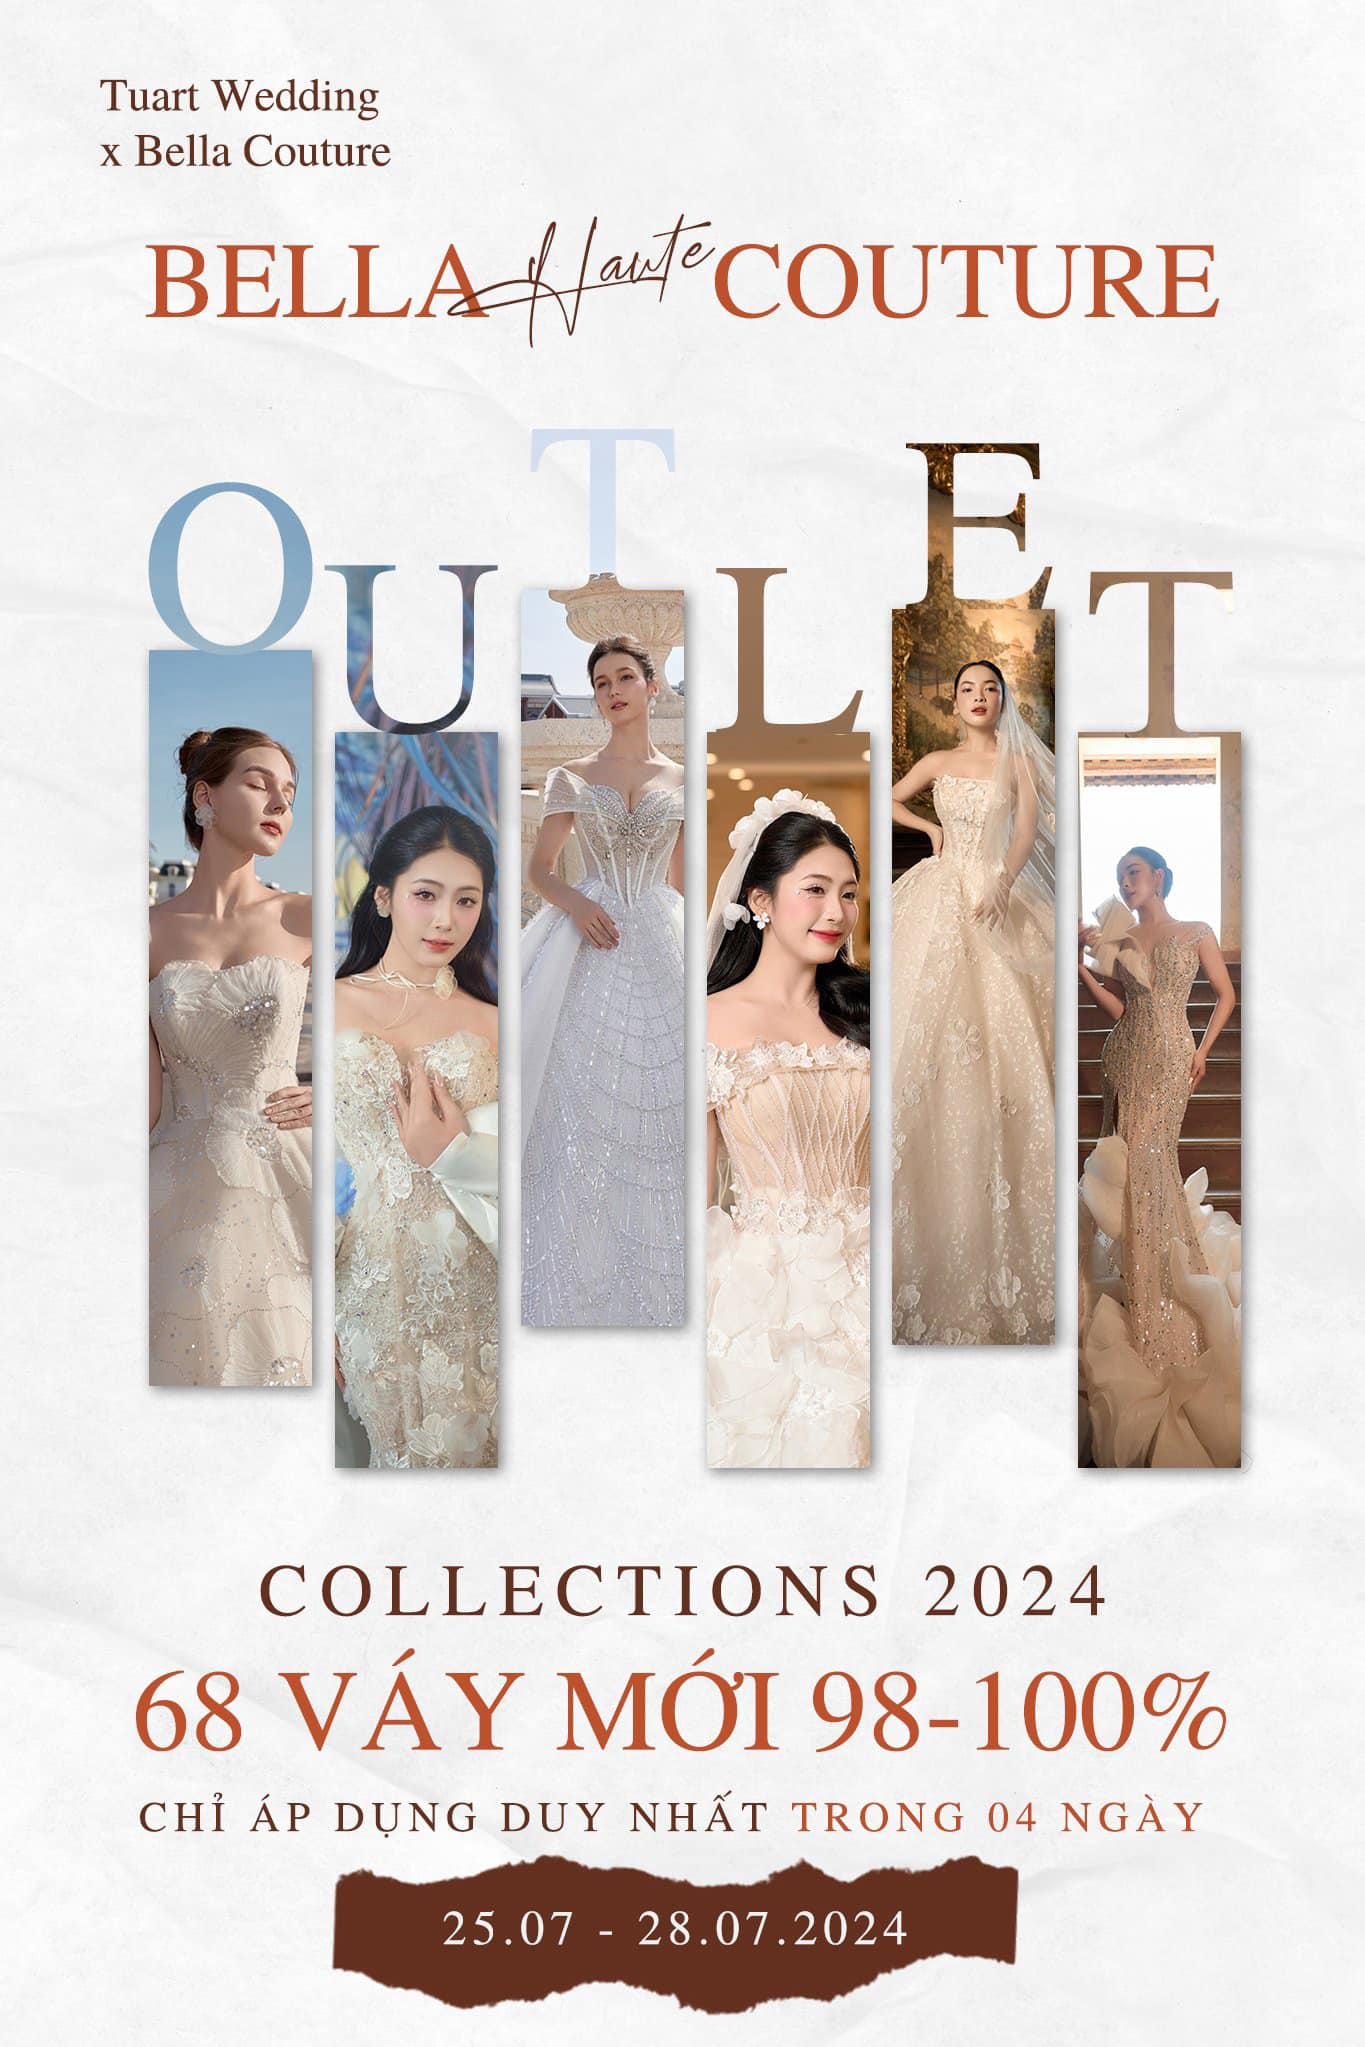 Chính thức mở bán thanh lý  váy cưới giá từ 3 triệu – Đợt 1 năm 2024 (Váy new 96% – 100%) – Bella Couture